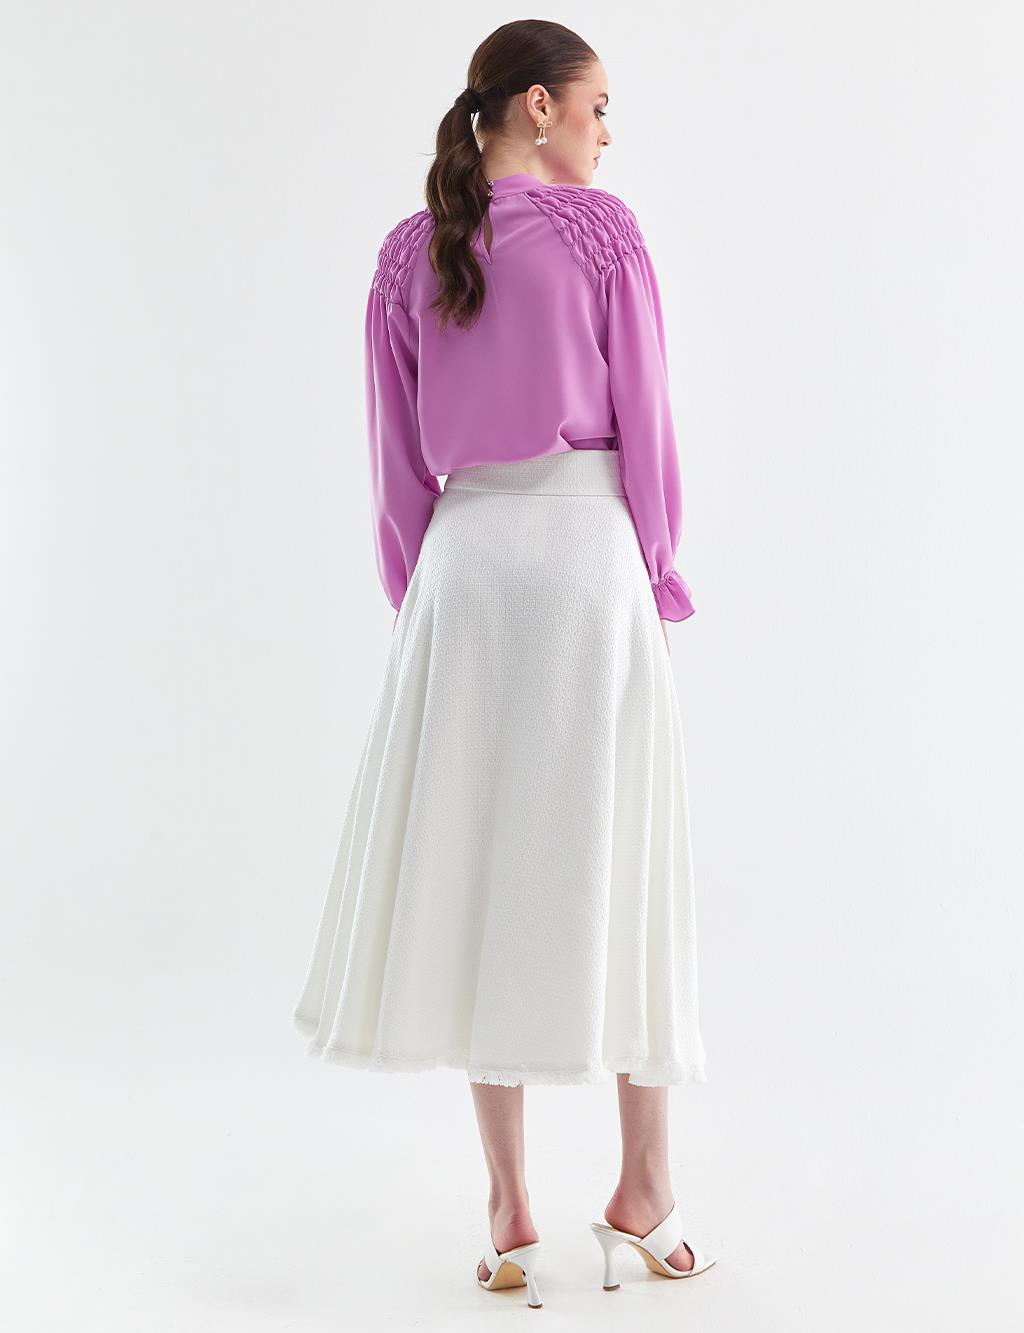 Tasseled Tweed Skirt Ecru